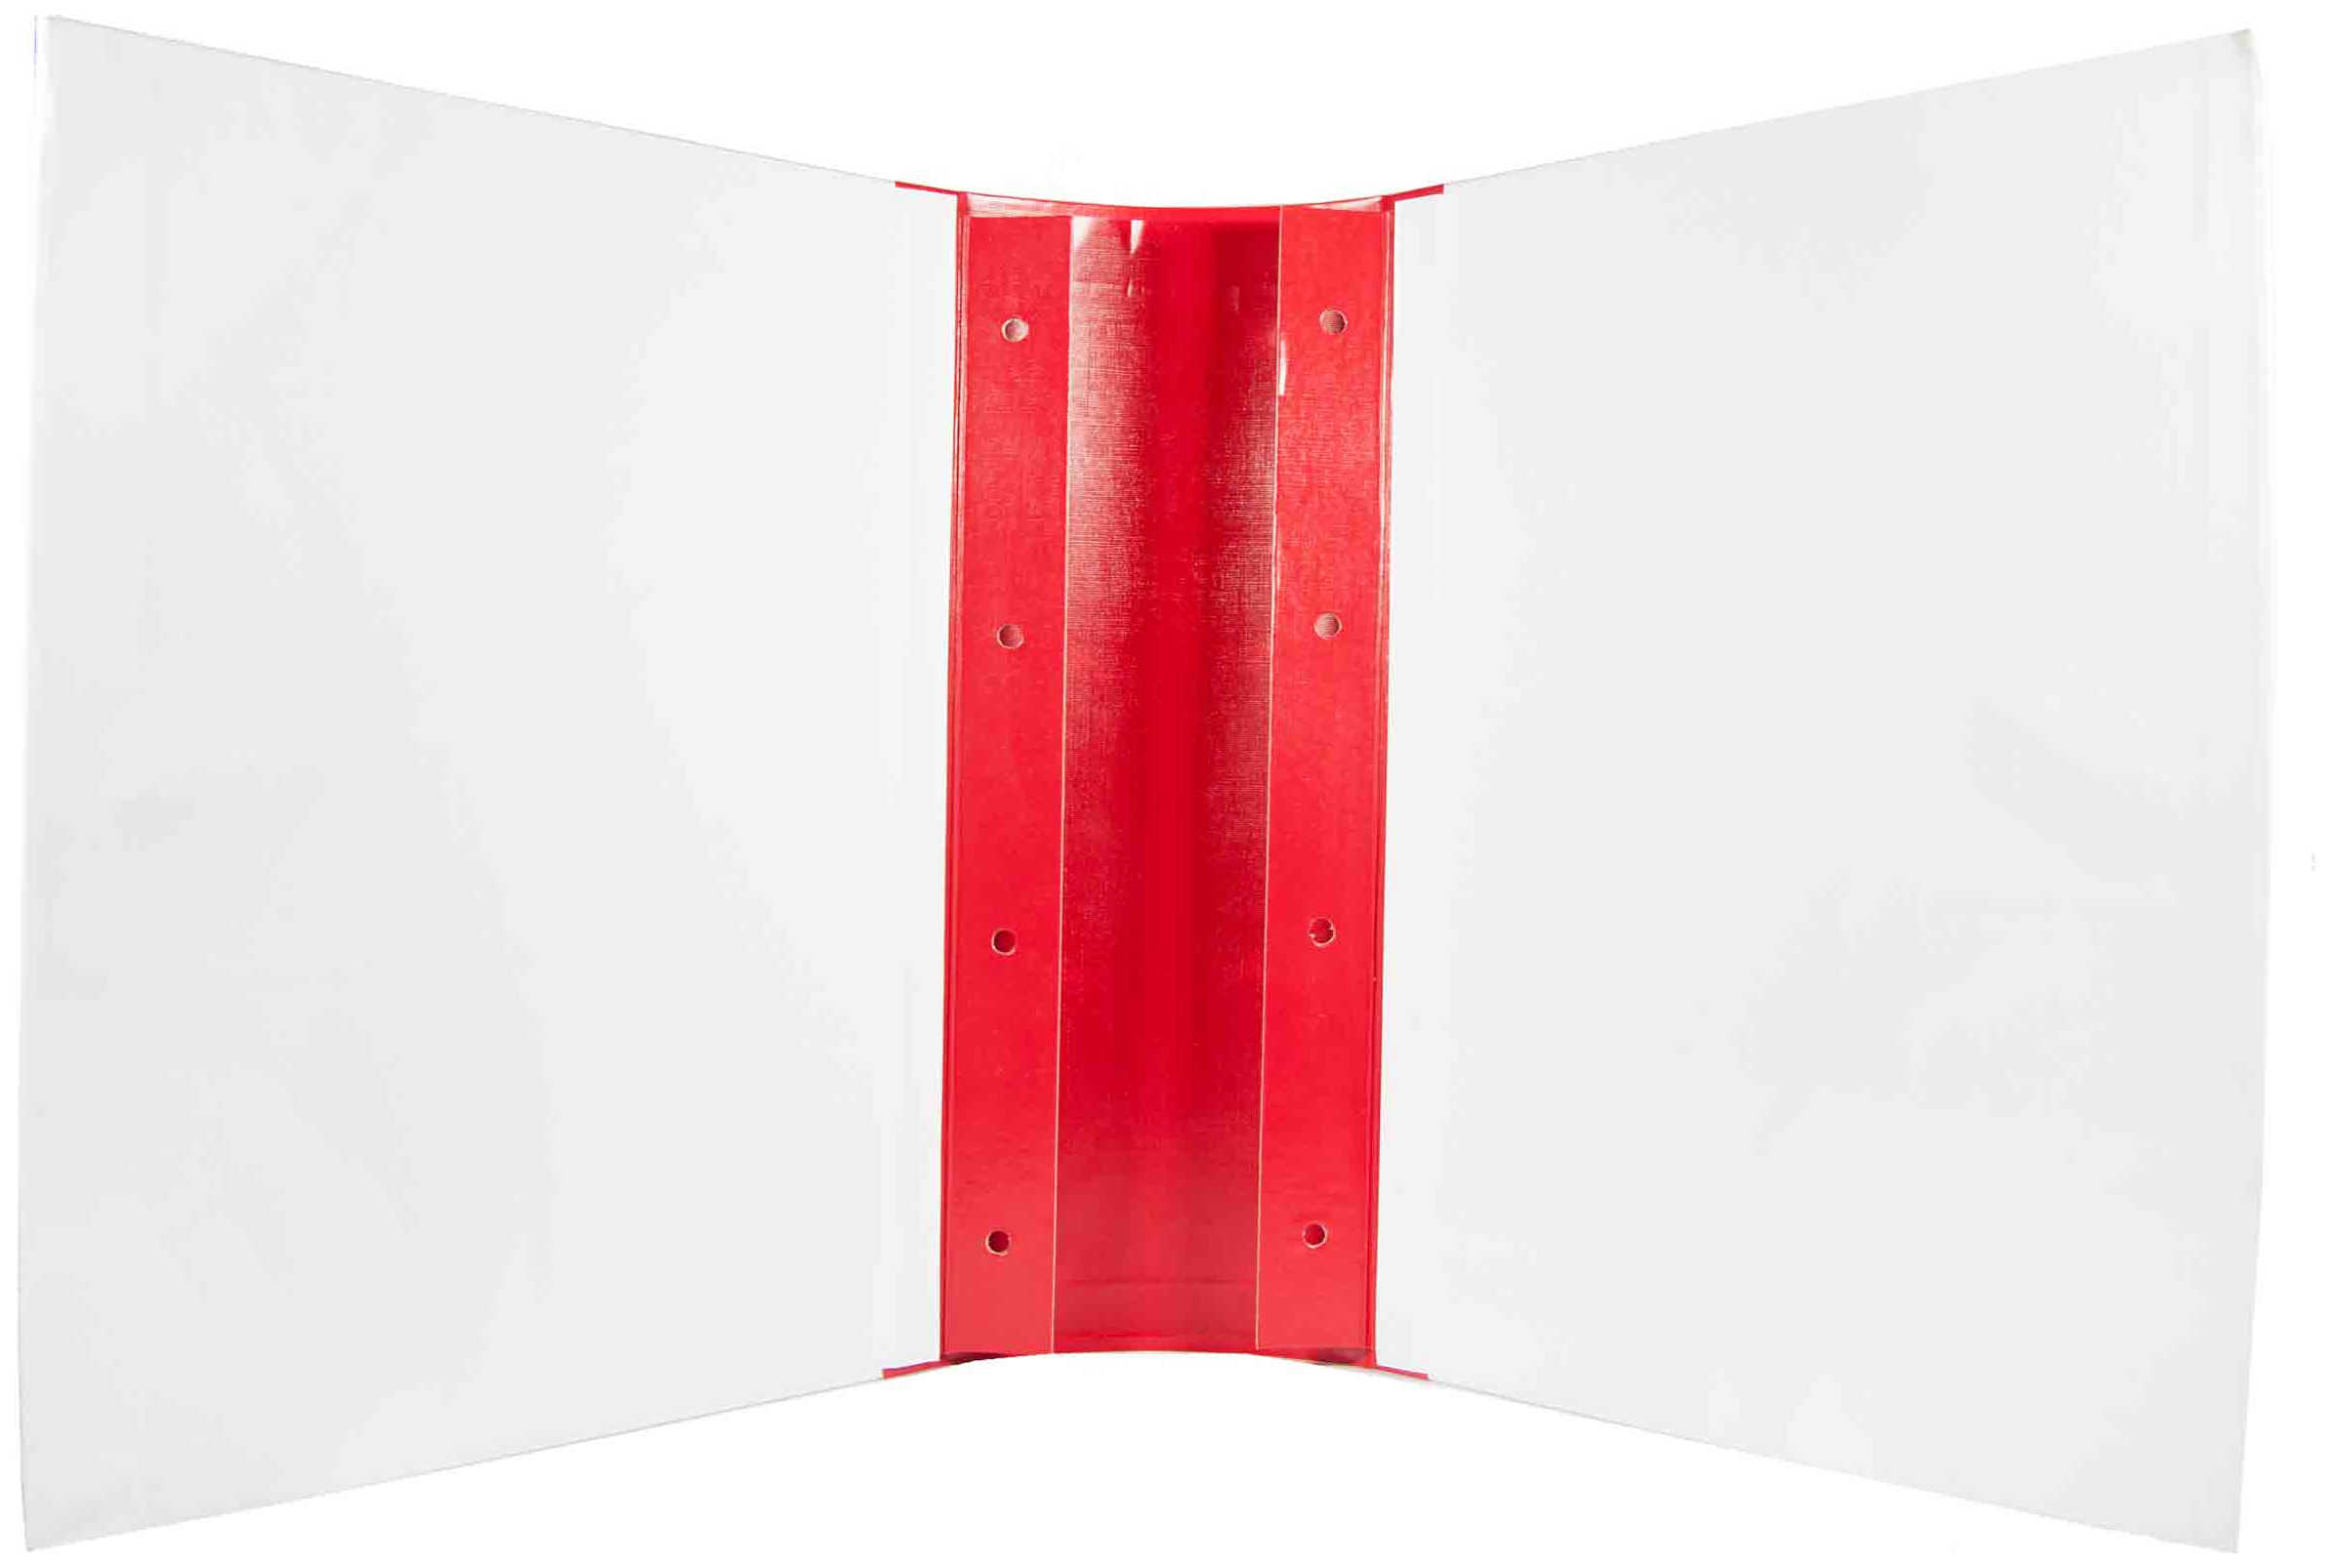 Цена: 144.20 руб. Архивная папка "Дело" (форма 21) А4, 100 мм, бумвинил, с цельнокройным гребешком, шнурки, красная